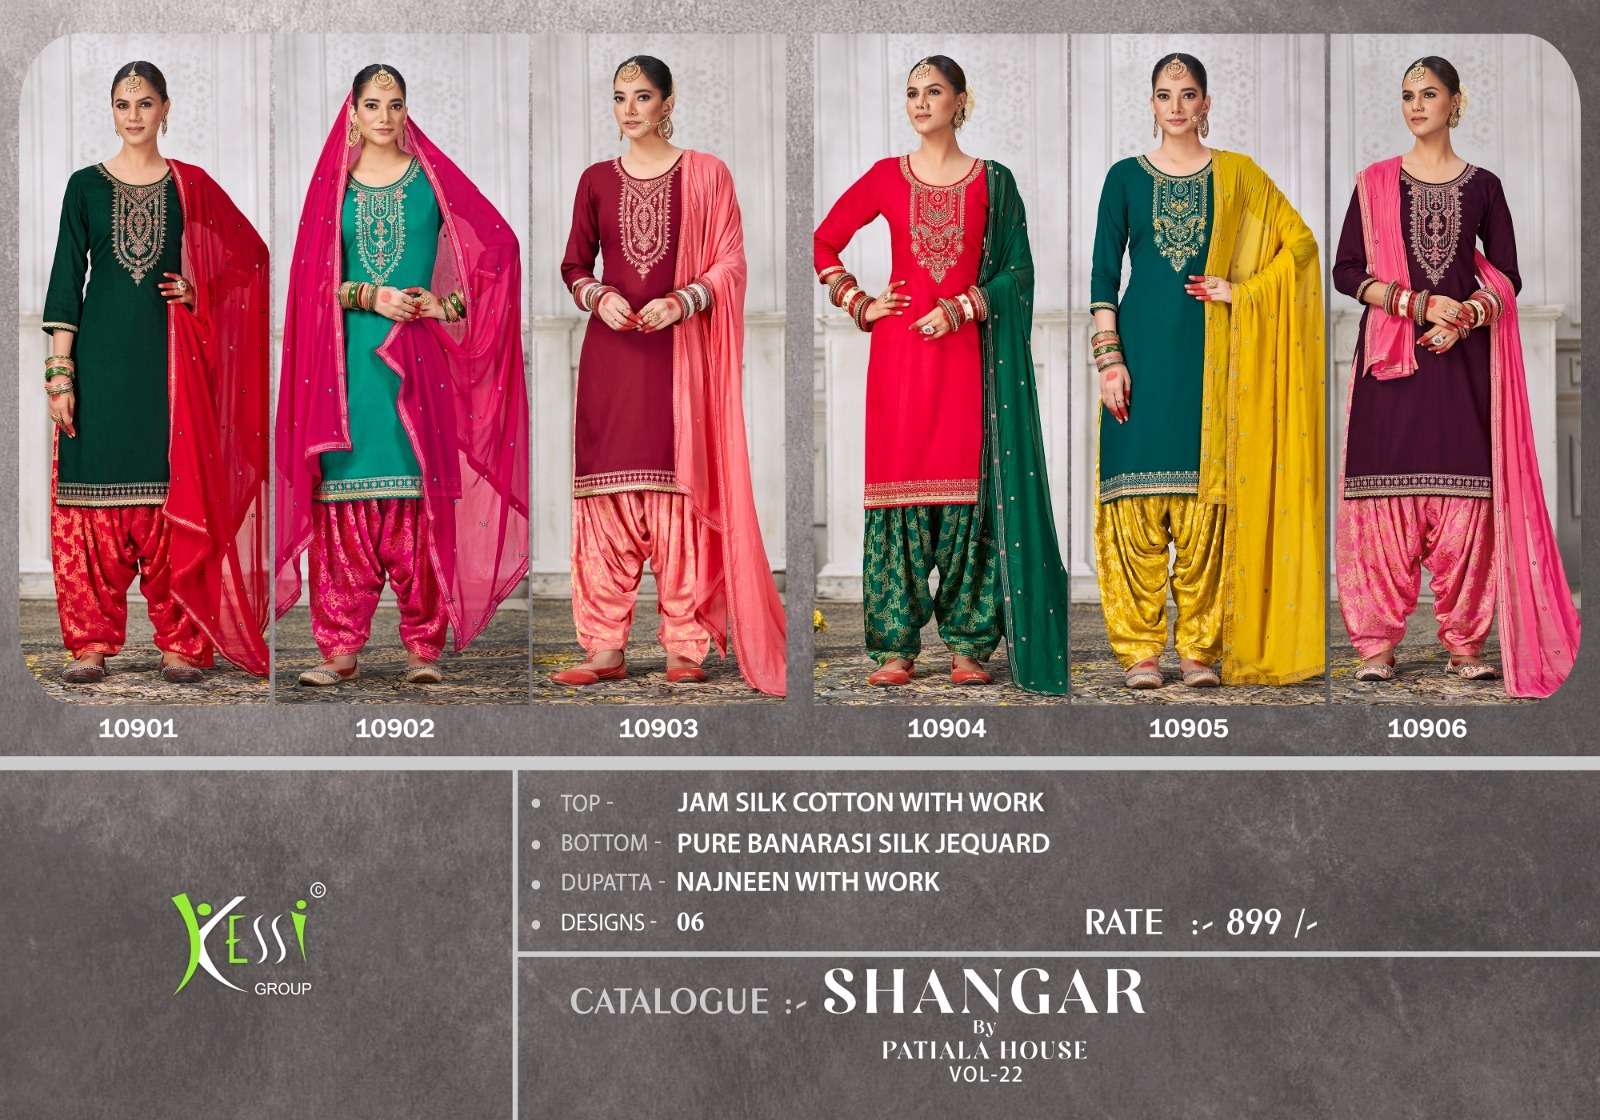 kessi shangar 10901-10906 series cotton designer patiyala suit wholesale surat gujarat